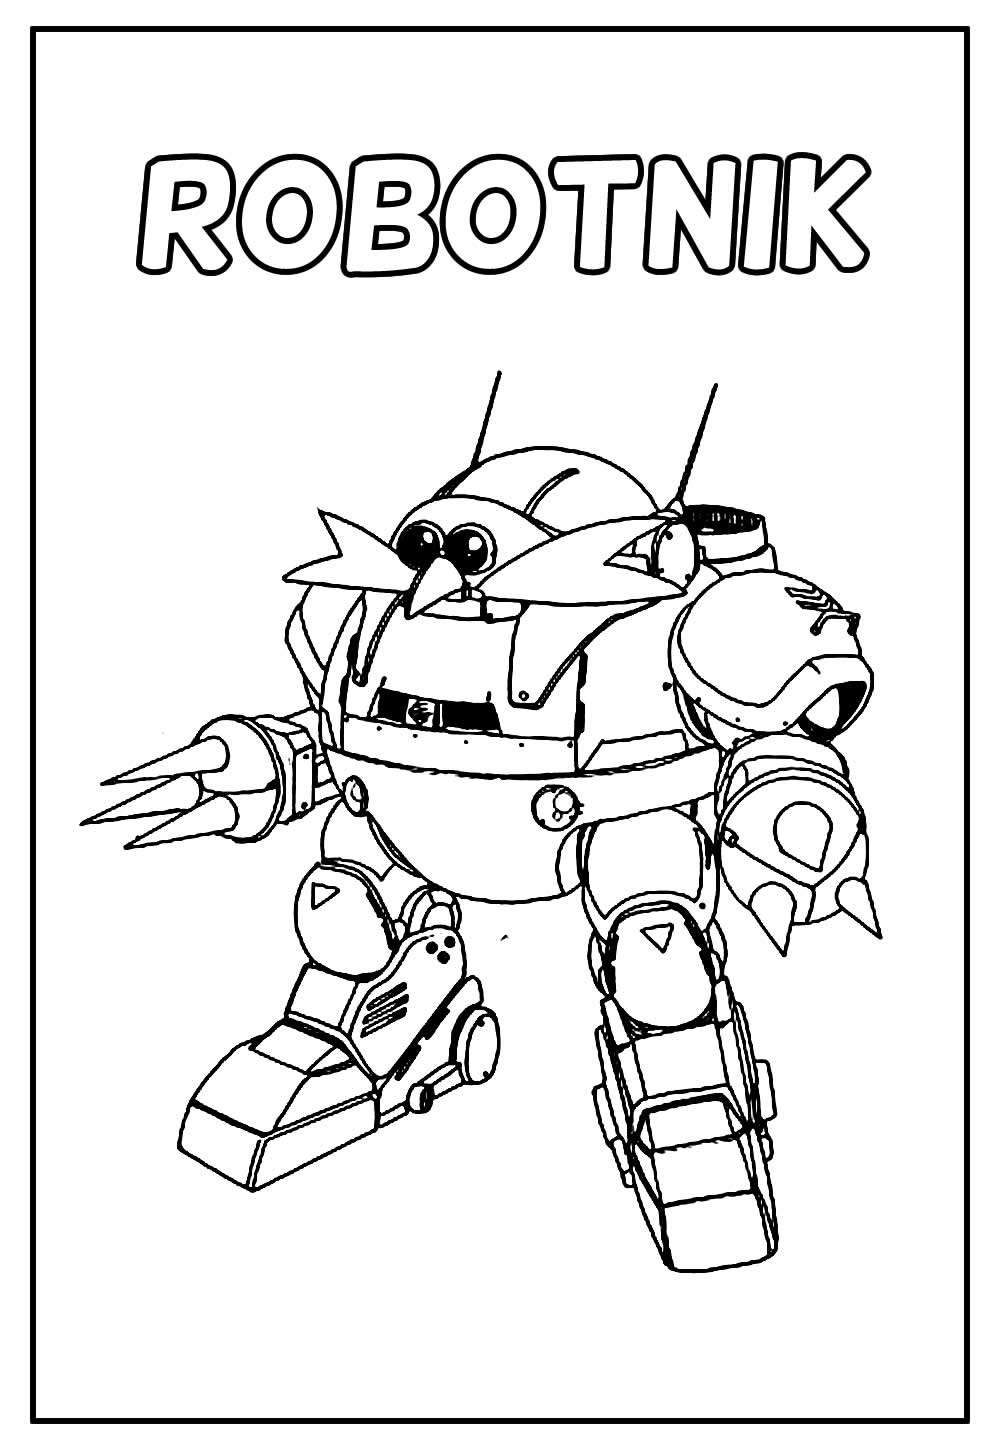 Desenho Educativo do Robotnik para colorir